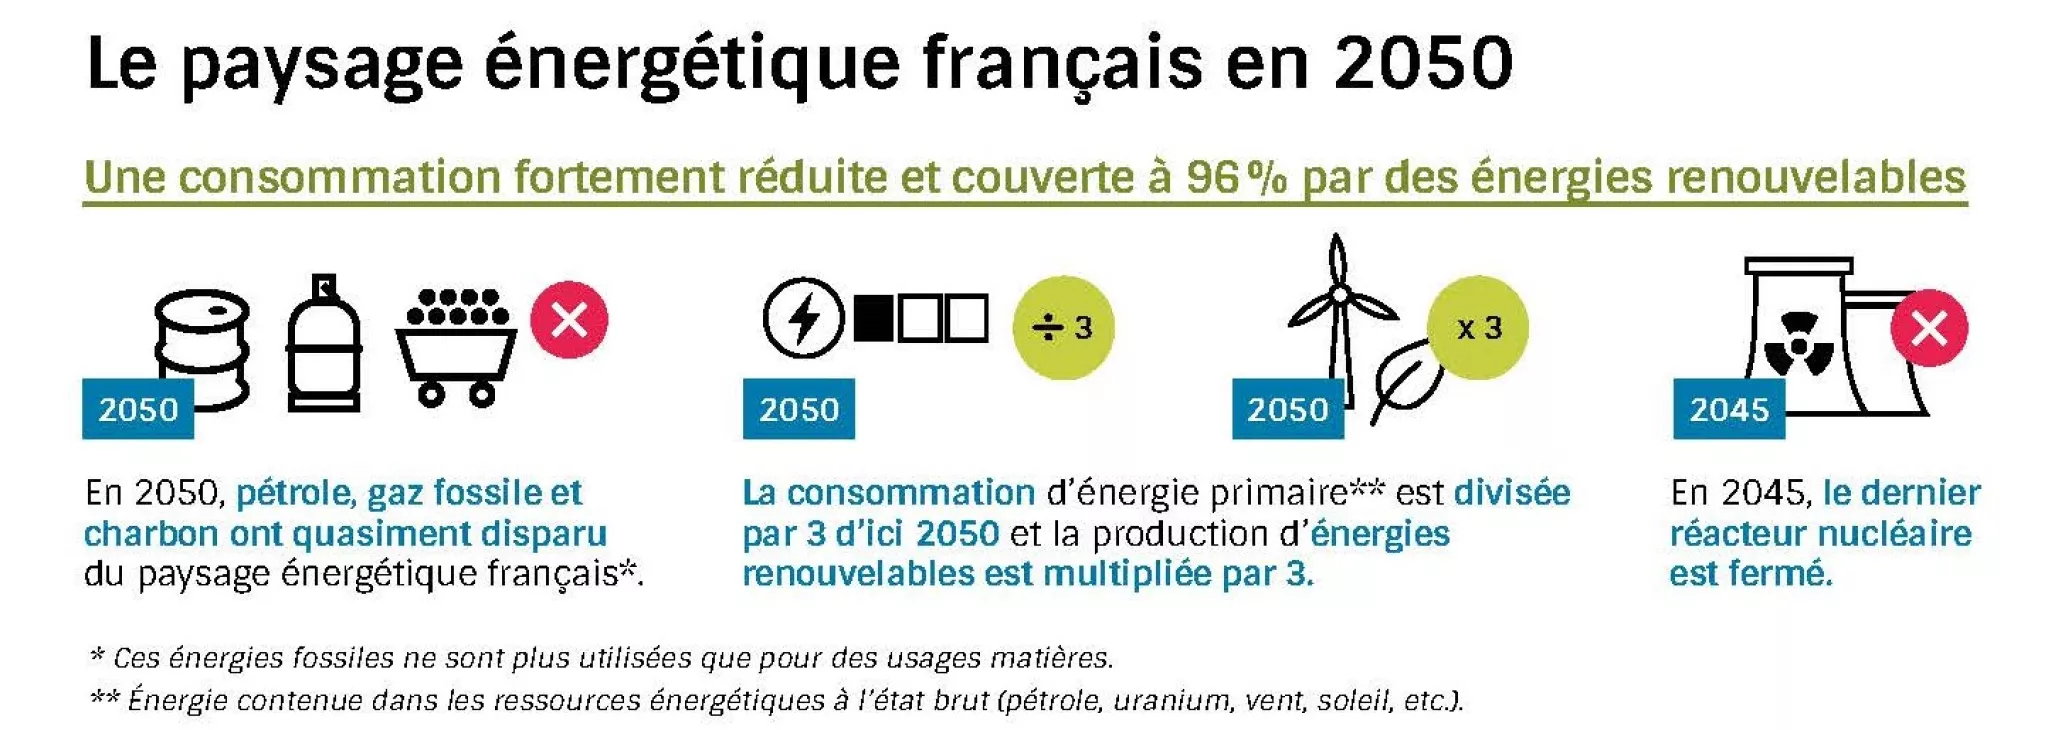 Le paysage énergétique français en 2050